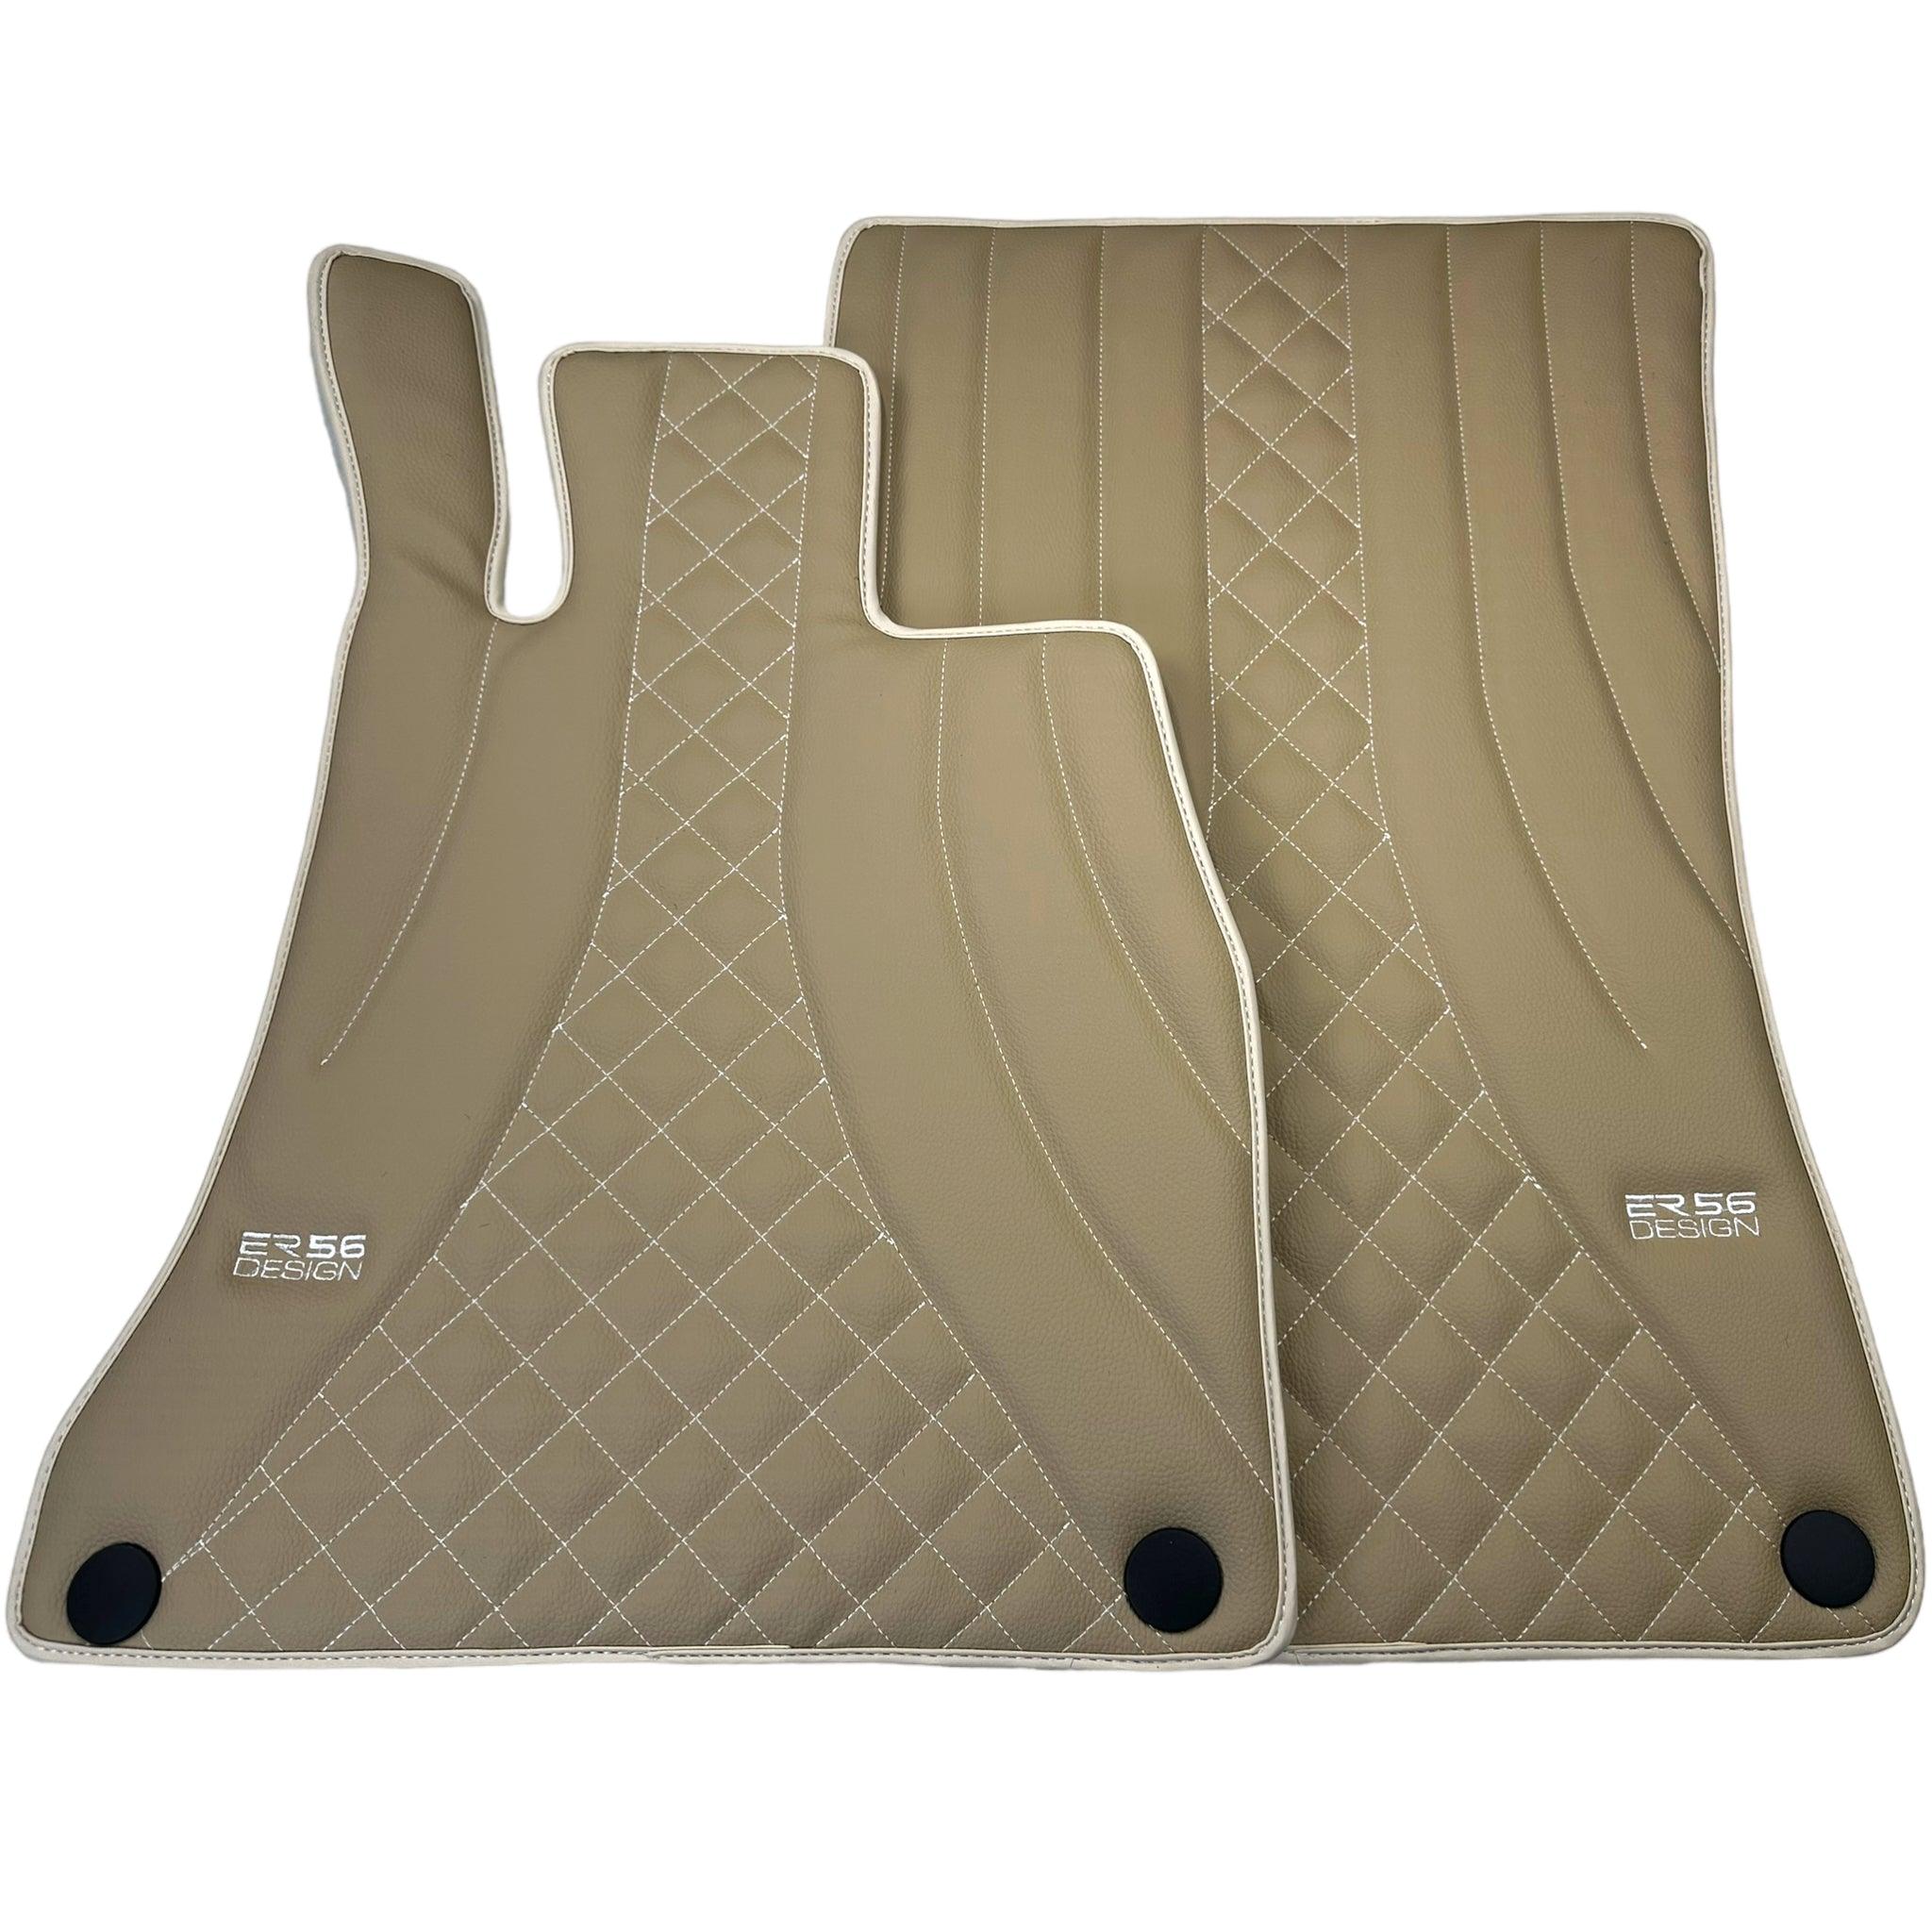 Beige Leather Floor Mats For Mercedes Benz S-Class W222 (2013-2020) Short Wheelbase